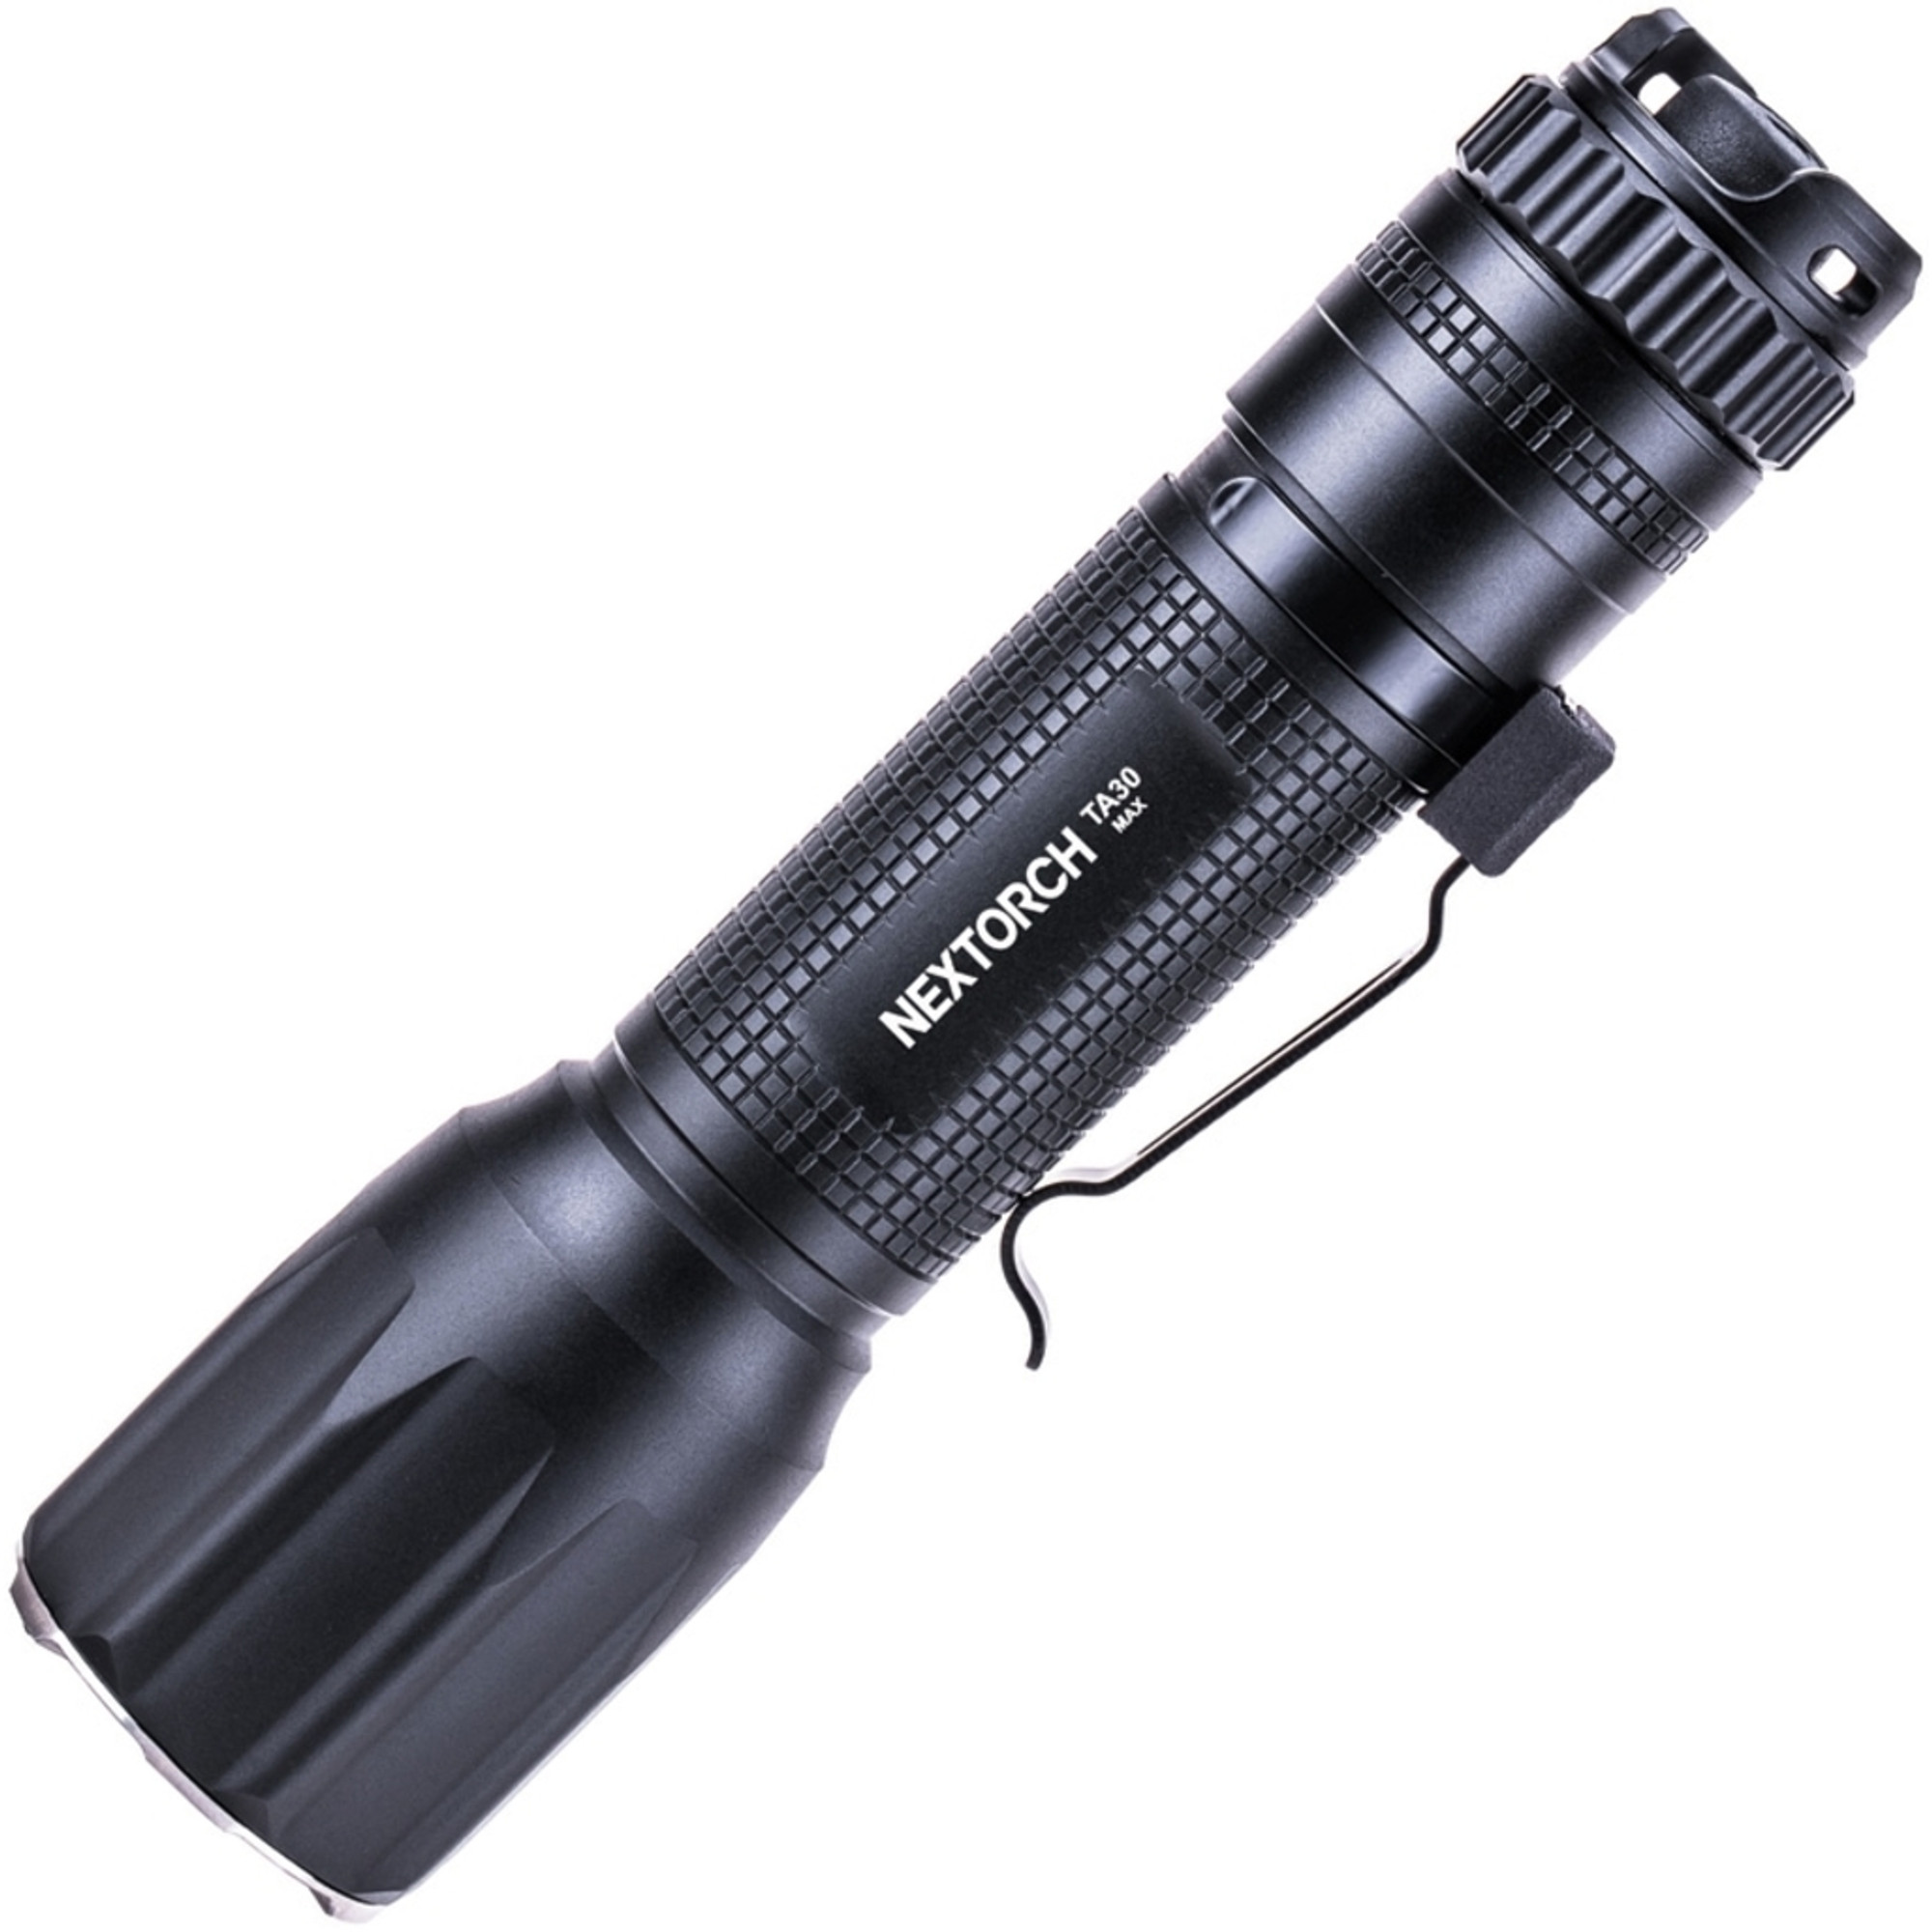 TA30 Max Tactical Flashlight